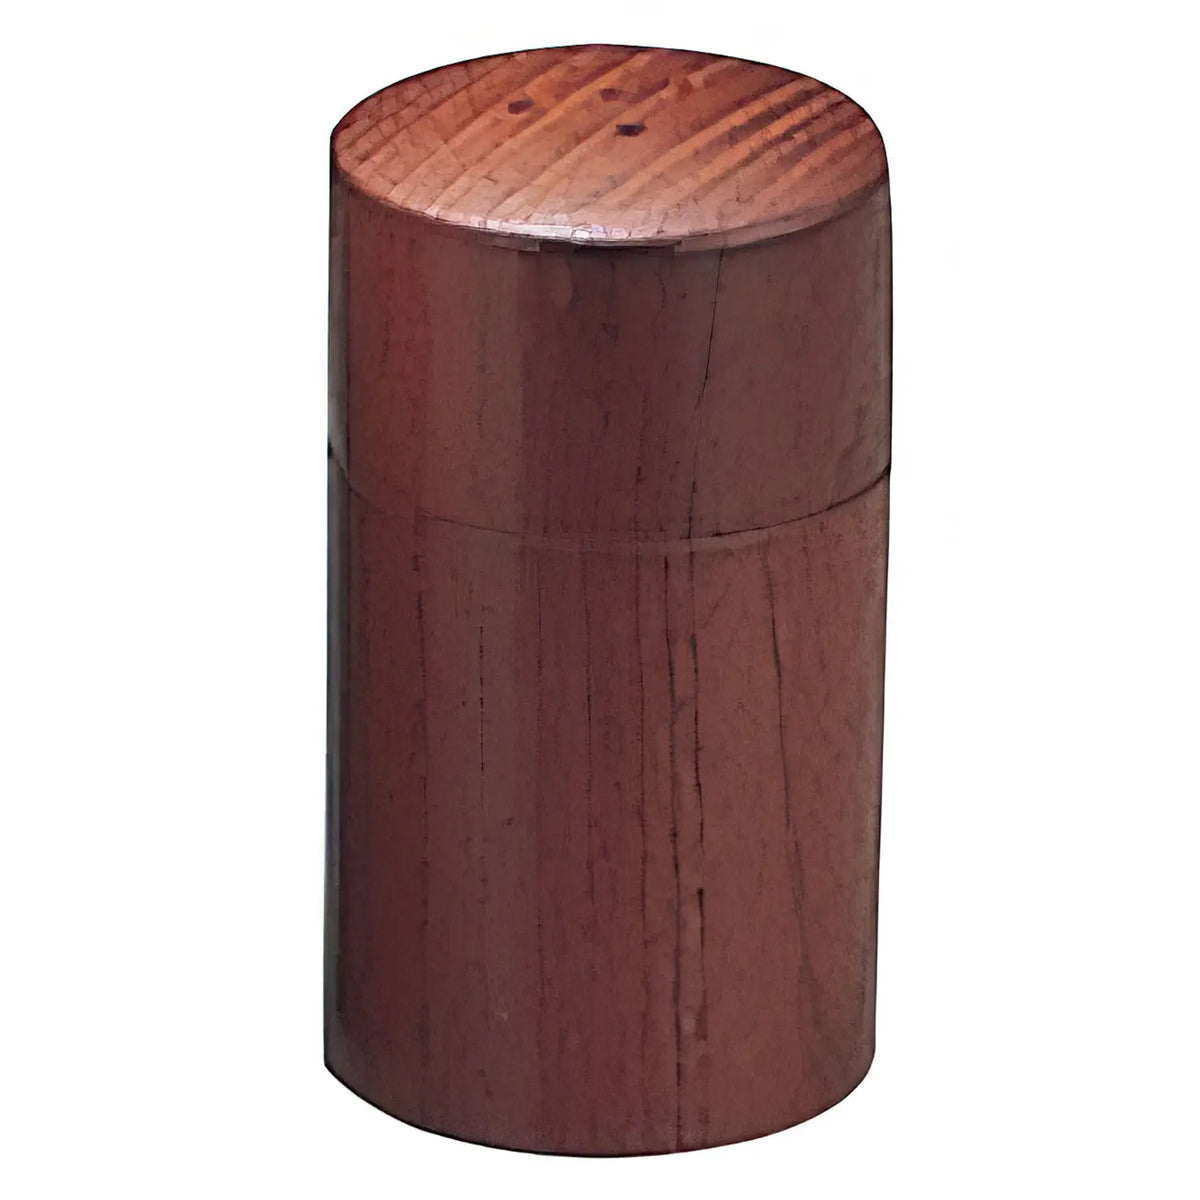 Yamacoh Wooden Pepper Shaker